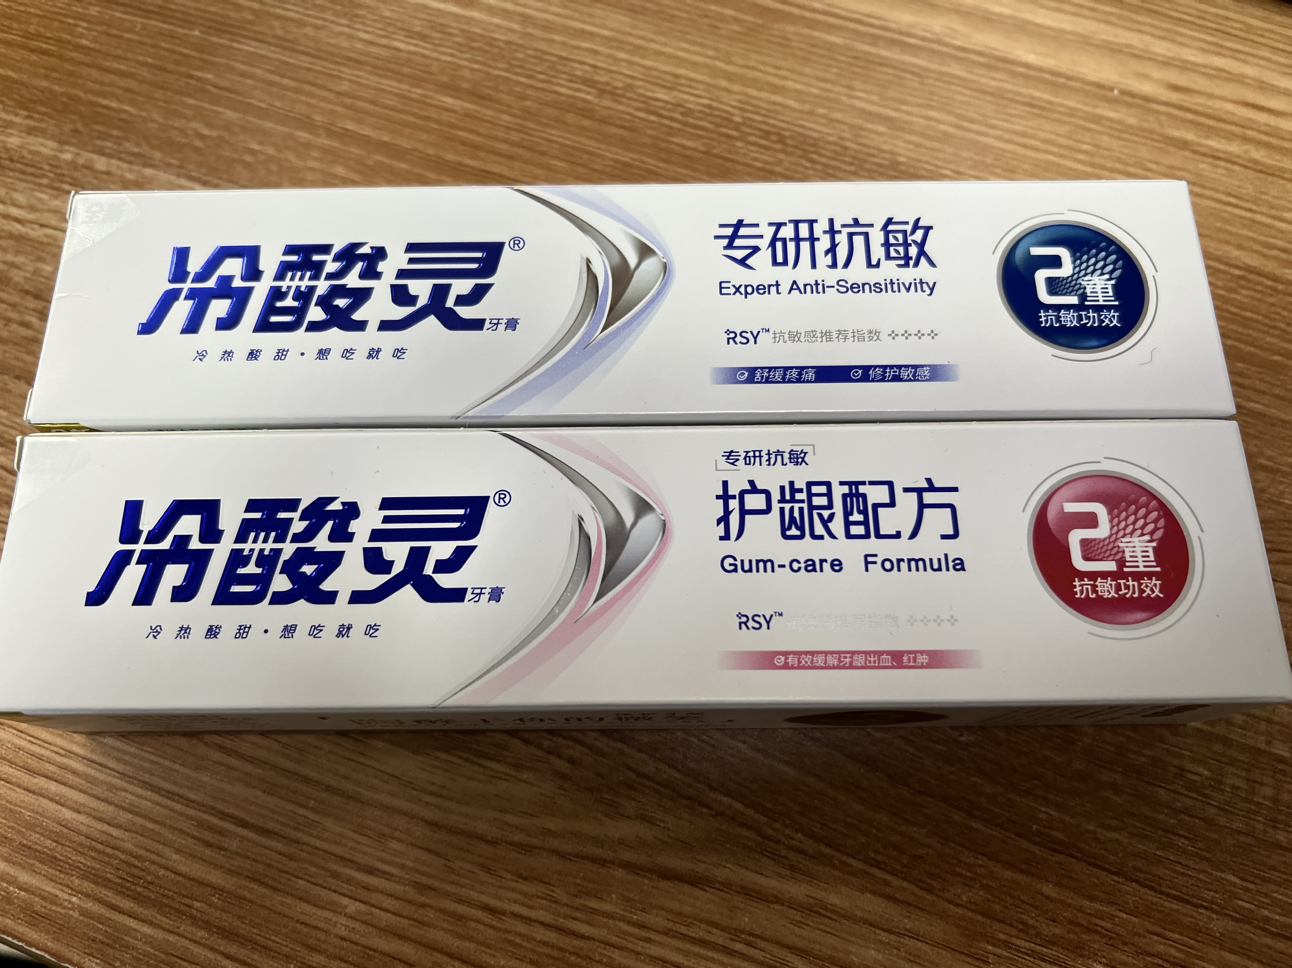 冷酸灵牙膏专研抗敏100g+护龈配方100g组合装 清新口气 修护牙龈 口腔清洁晒单图